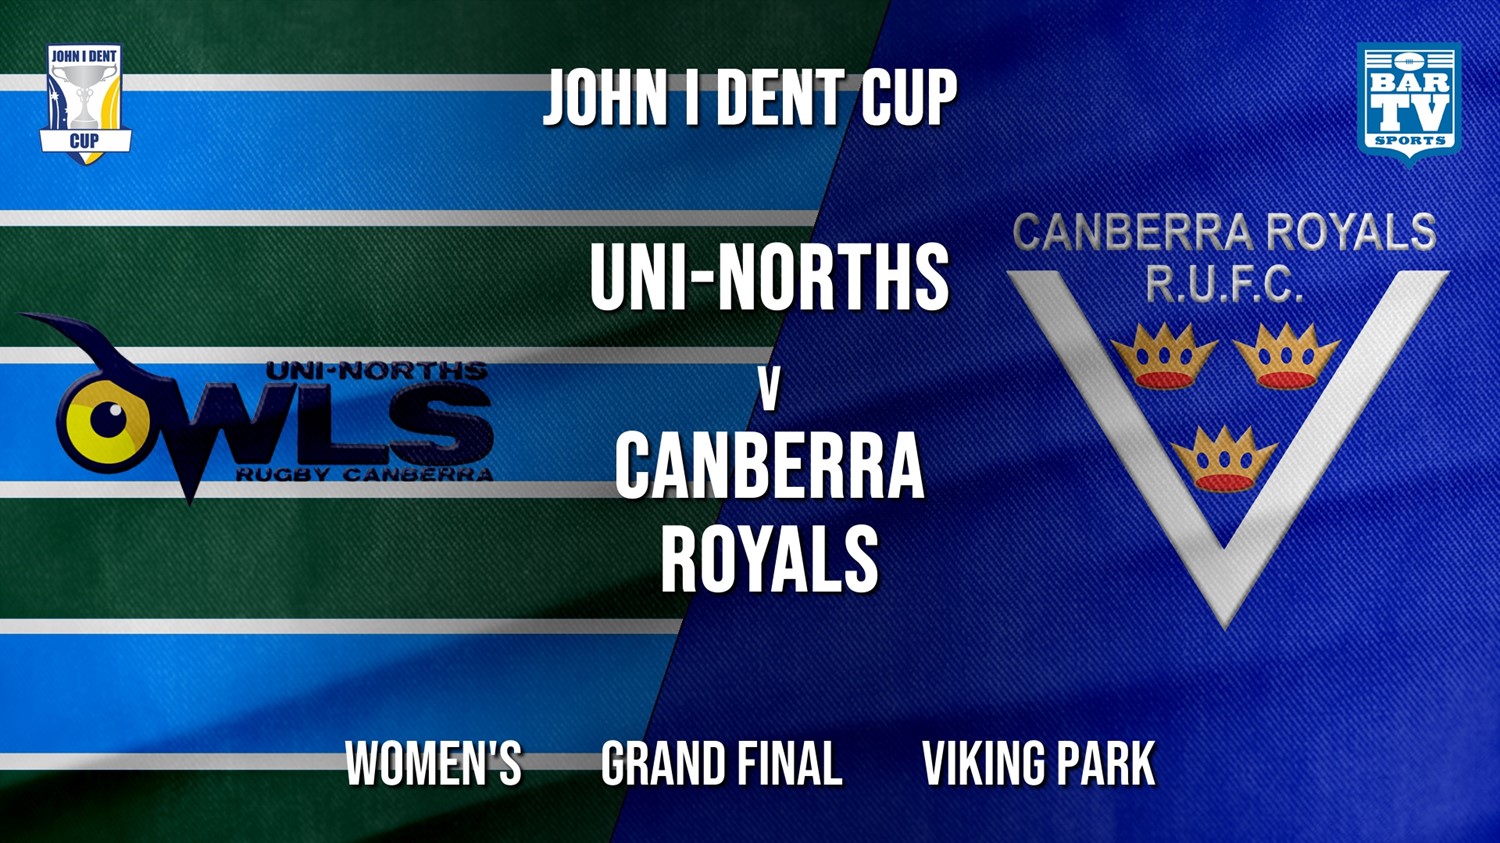 John I Dent Grand Final - Women's - UNI-Norths v Canberra Royals Minigame Slate Image